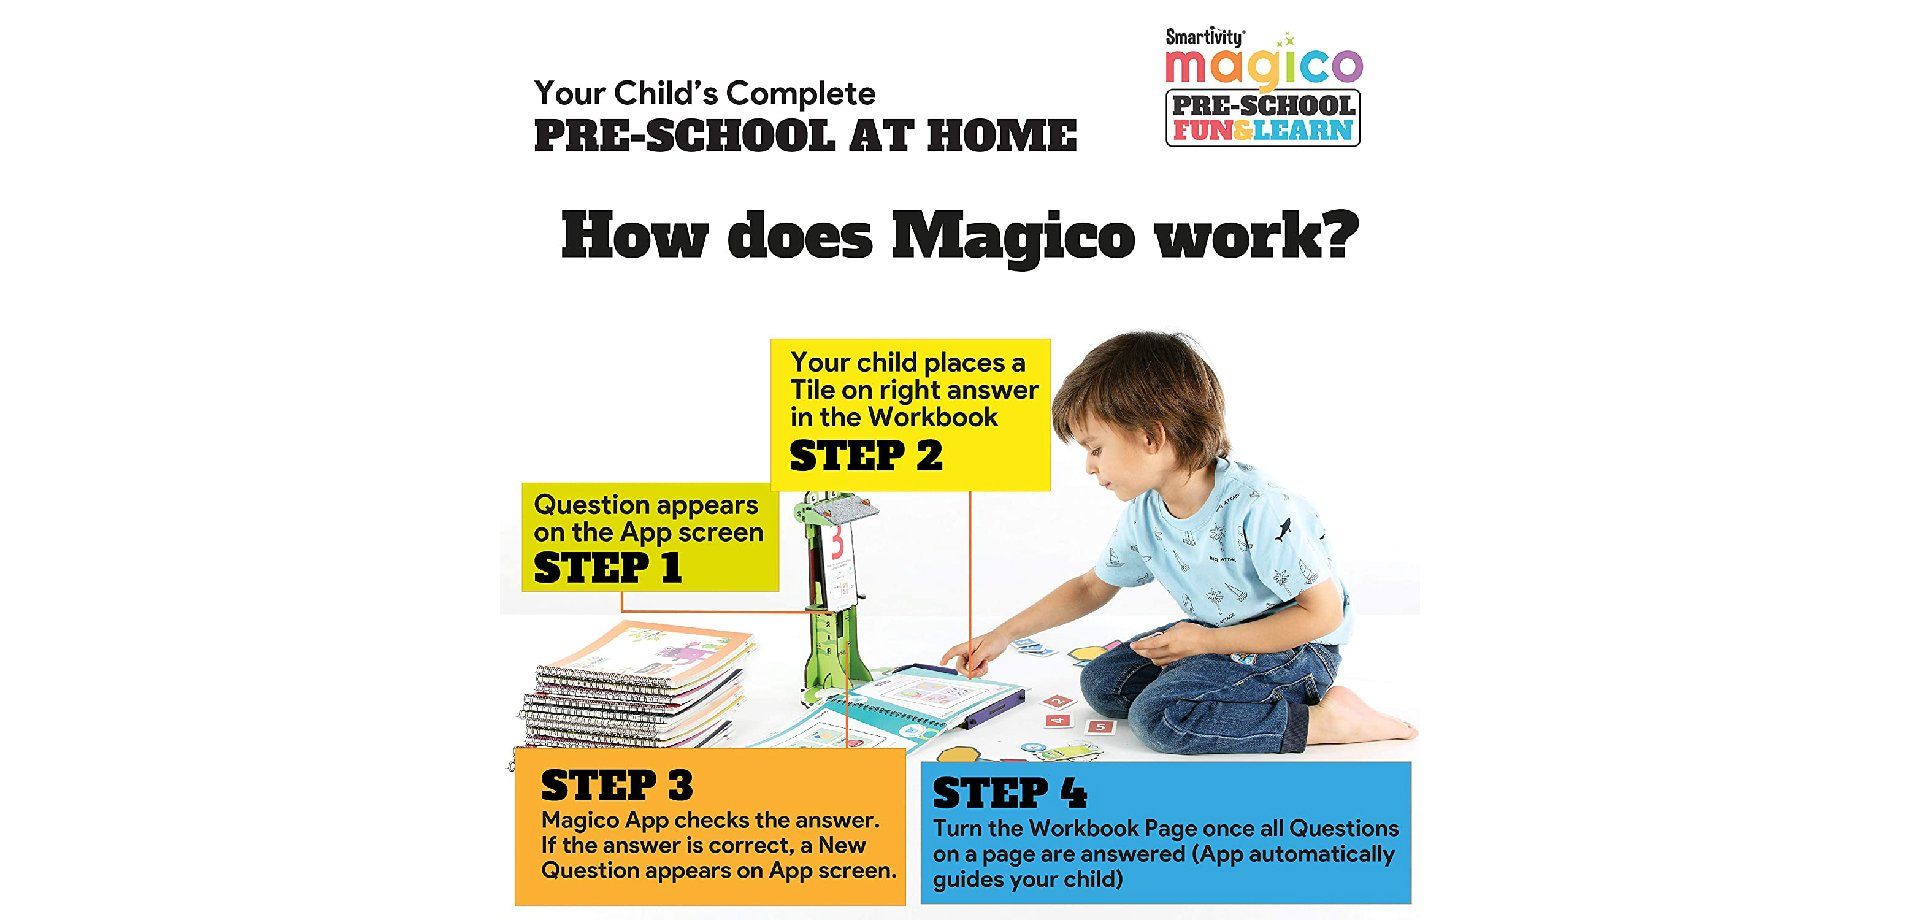 Magico Pre-School Fun & Learn - Smartivity